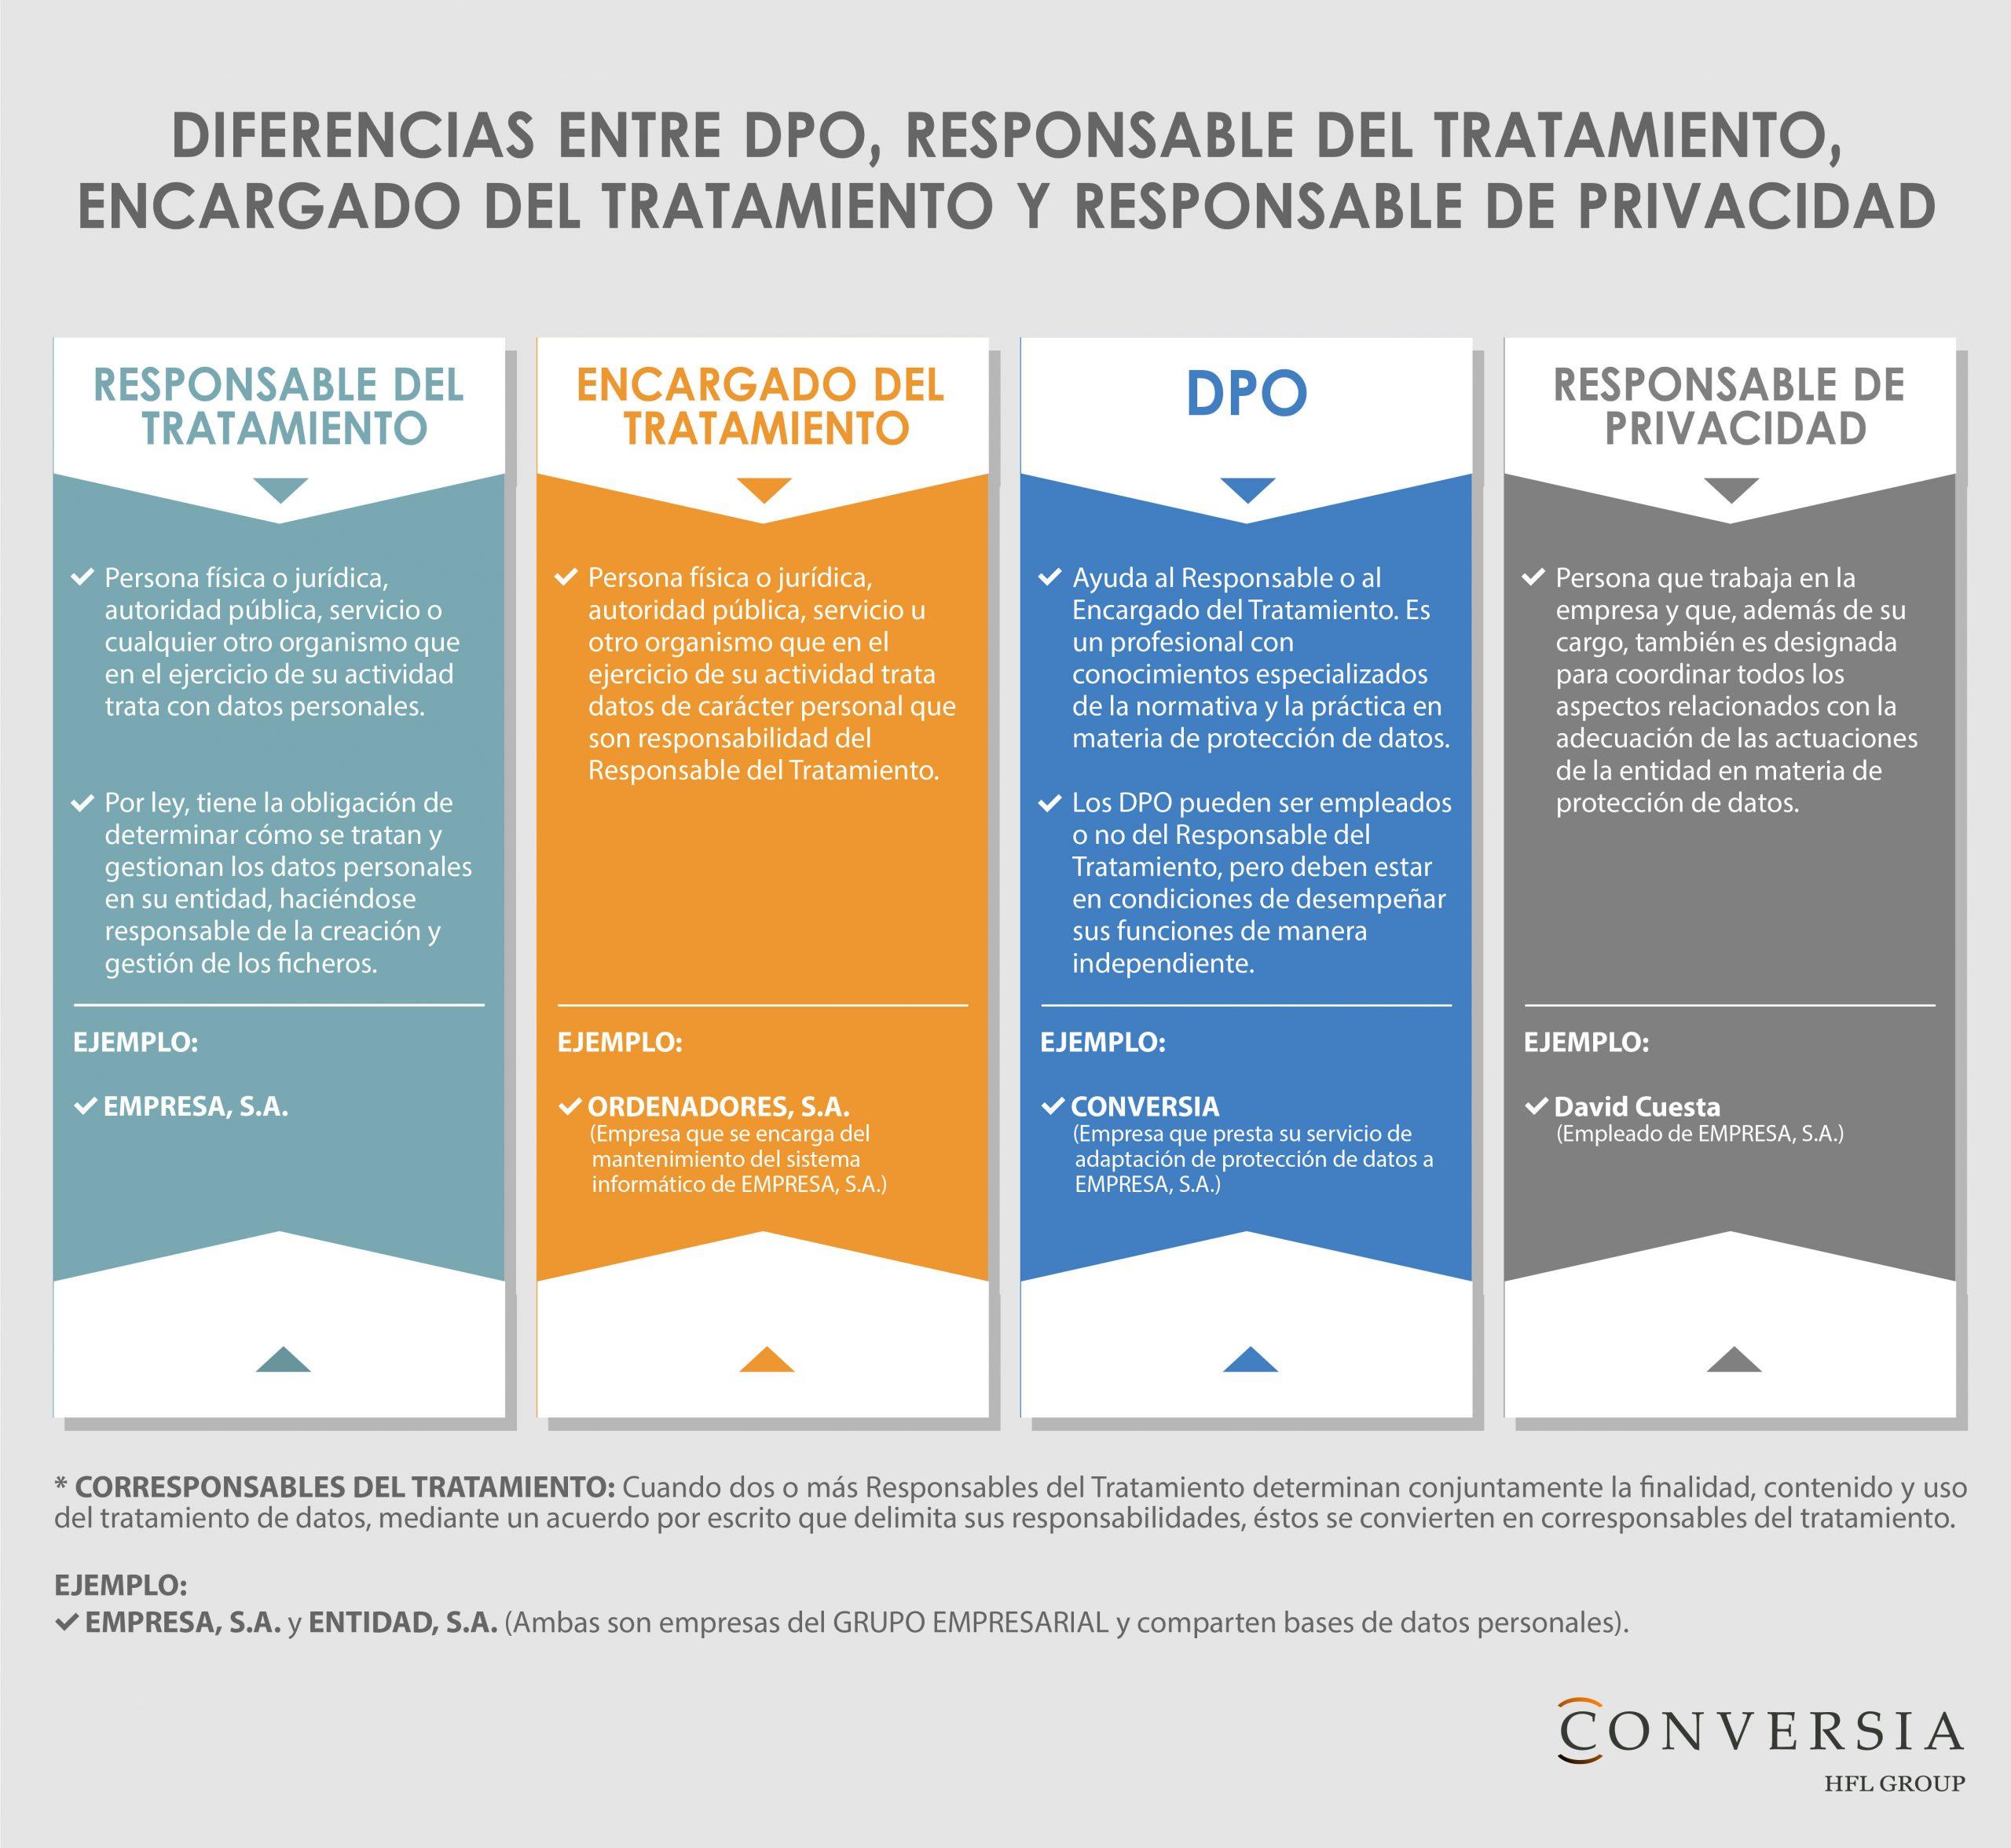 Diferencia entre DPO, Responsable del Tratamiento, Encargado del Tratamiento y Responsable de Privacidad